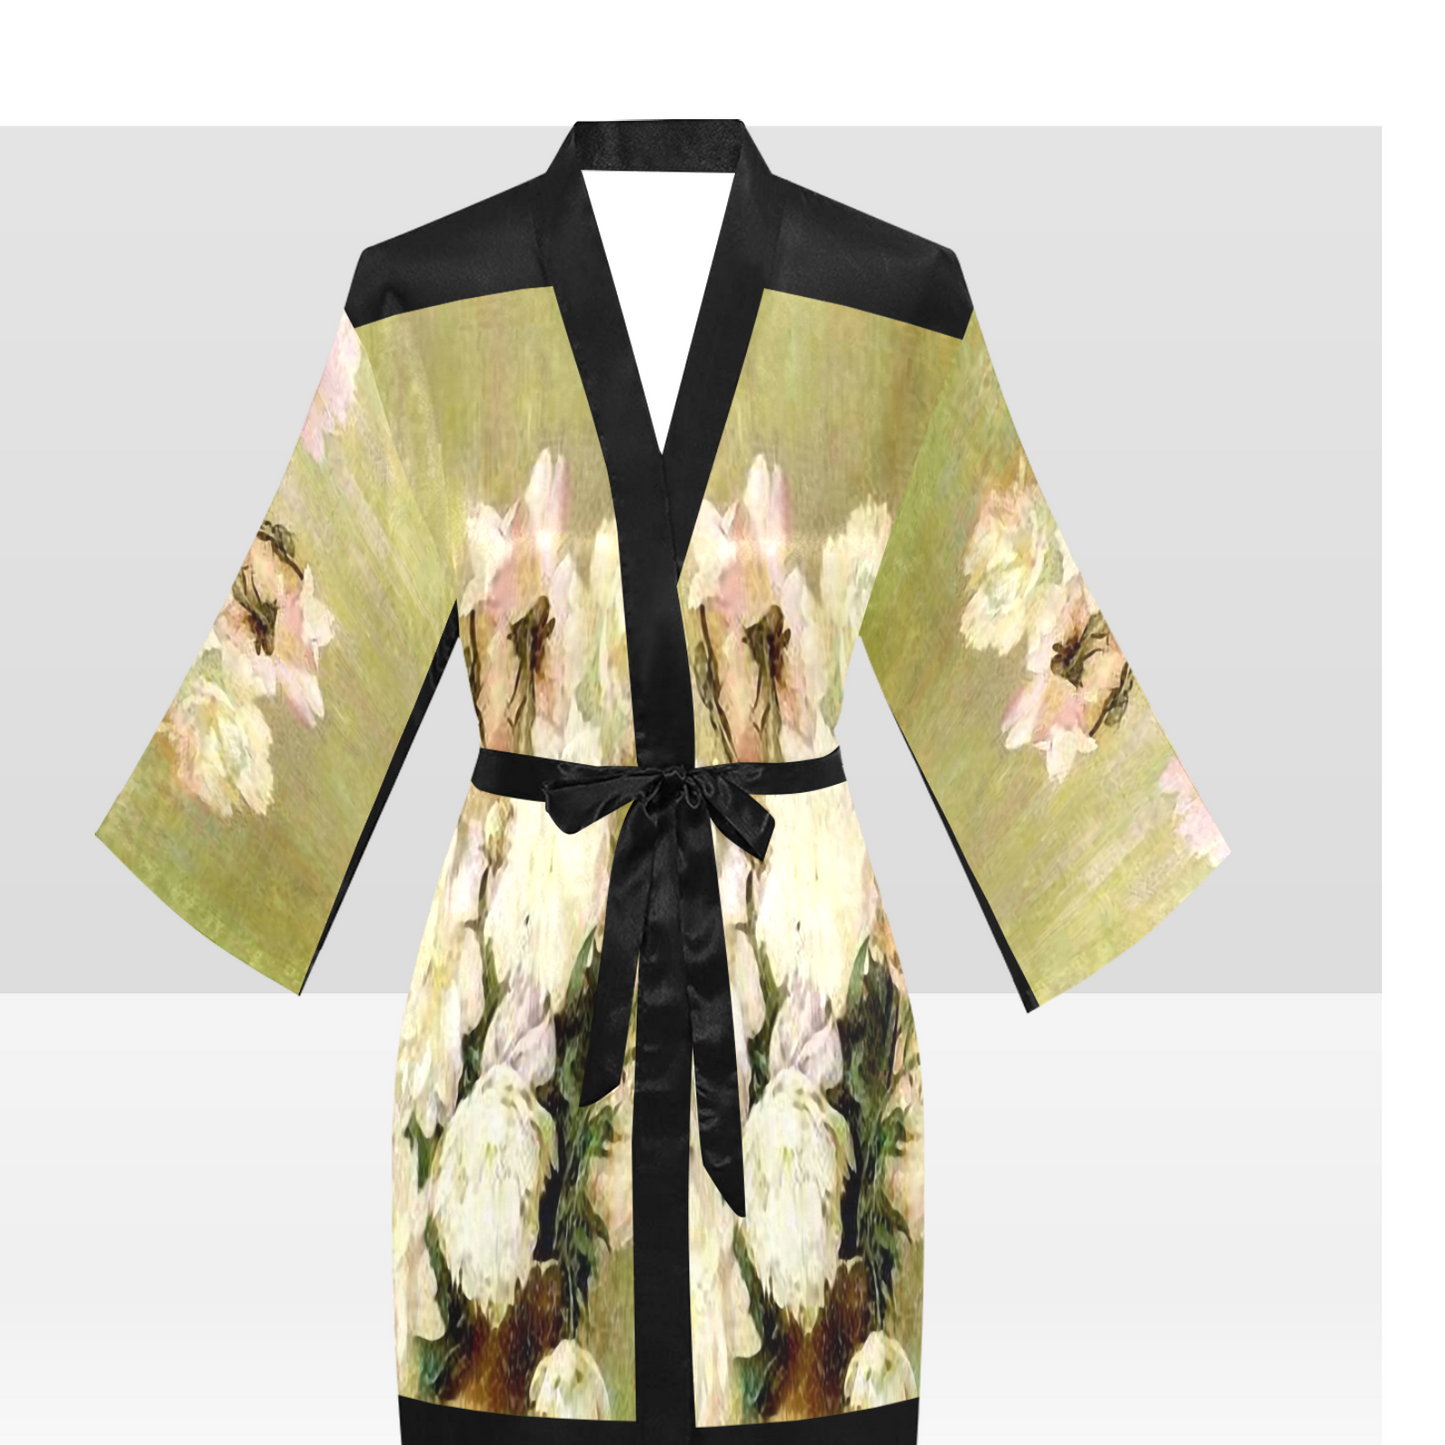 Vintage Floral Kimono Robe, Black or White Trim, Sizes XS to 2XL, Design 35